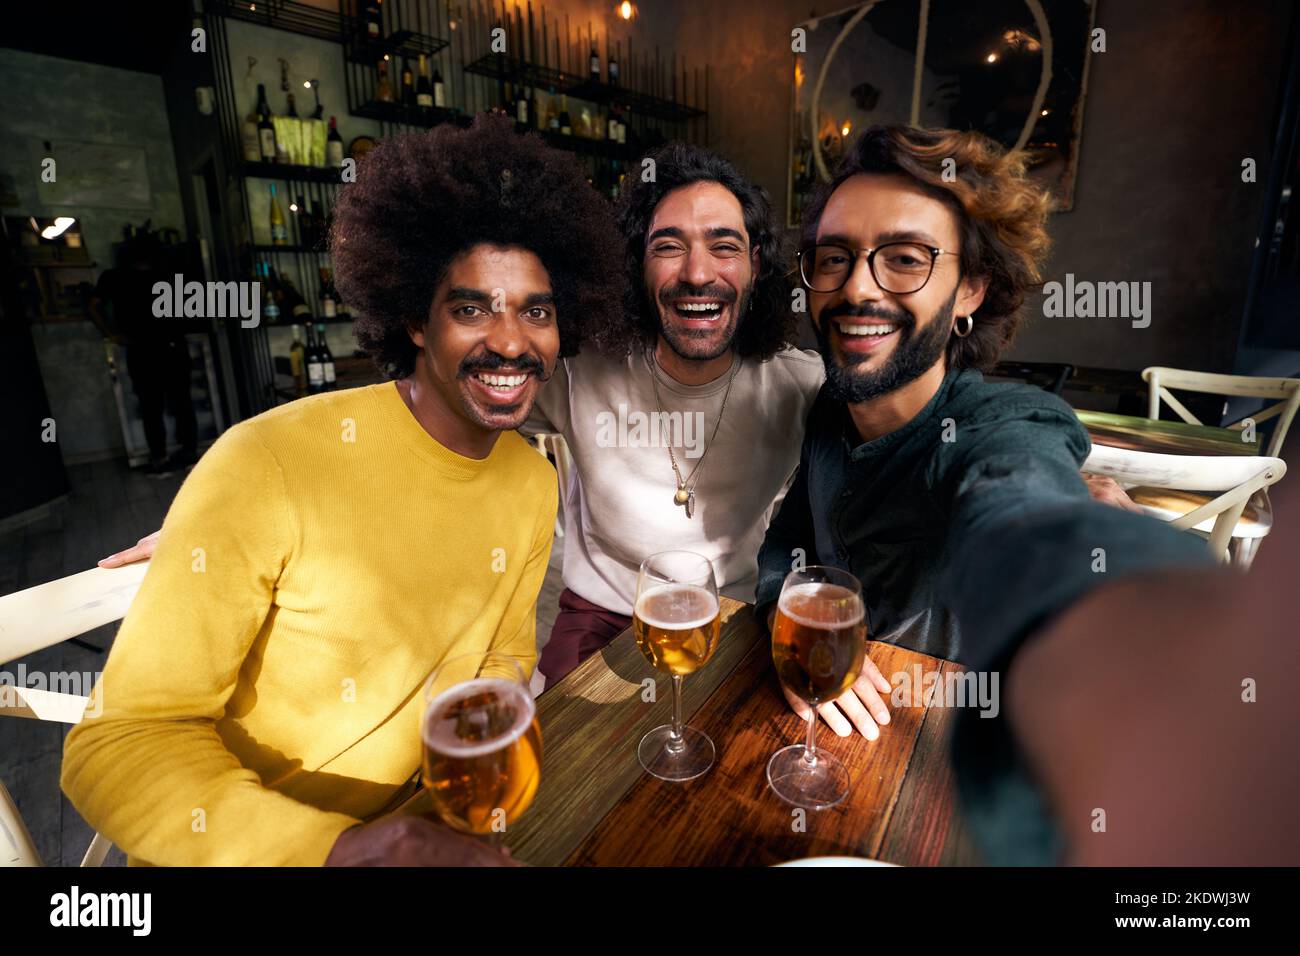 Horizontales Selfie von drei männlichen Freunden, die fröhlich in einer Bar toasten und mit großem Lächeln auf die Kamera blicken. Stockfoto